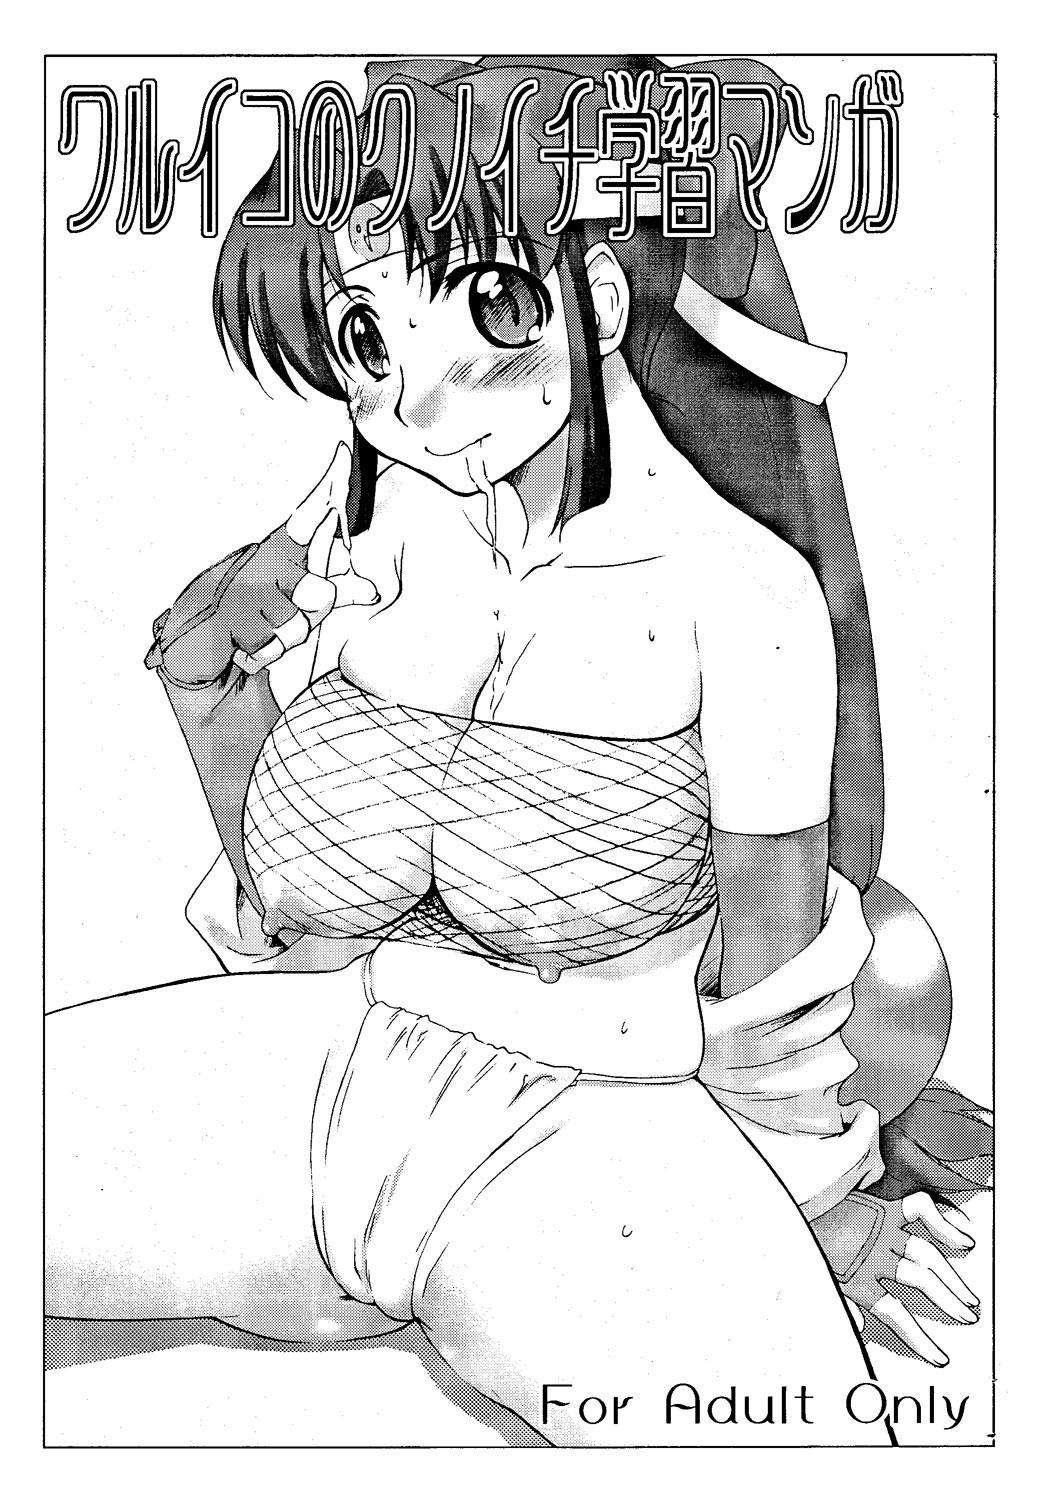 Sucking Waruiko no Kunoichi Gakushuu Manga - 2x2 shinobuden Socks - Page 1